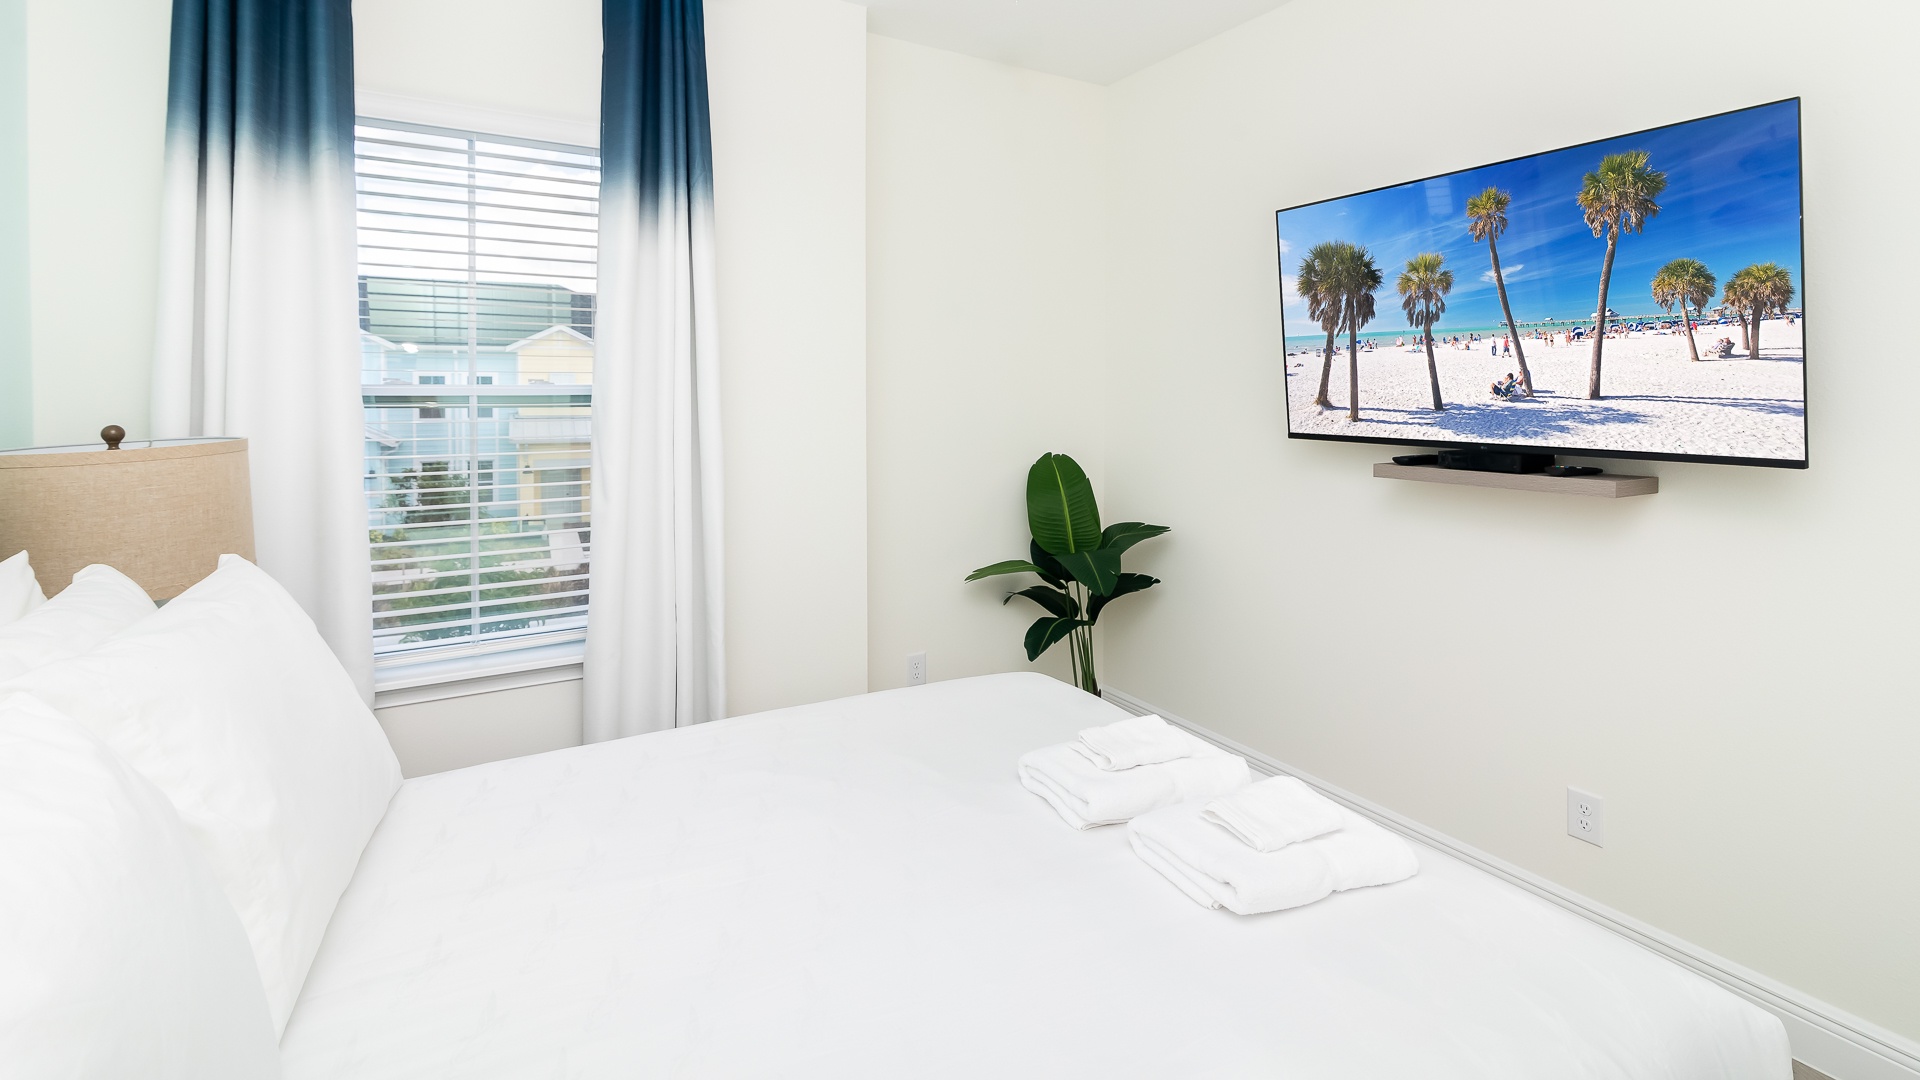 Bedroom 3:1st Floor Queen Bedroom with Smart TV, ceiling fan with remote